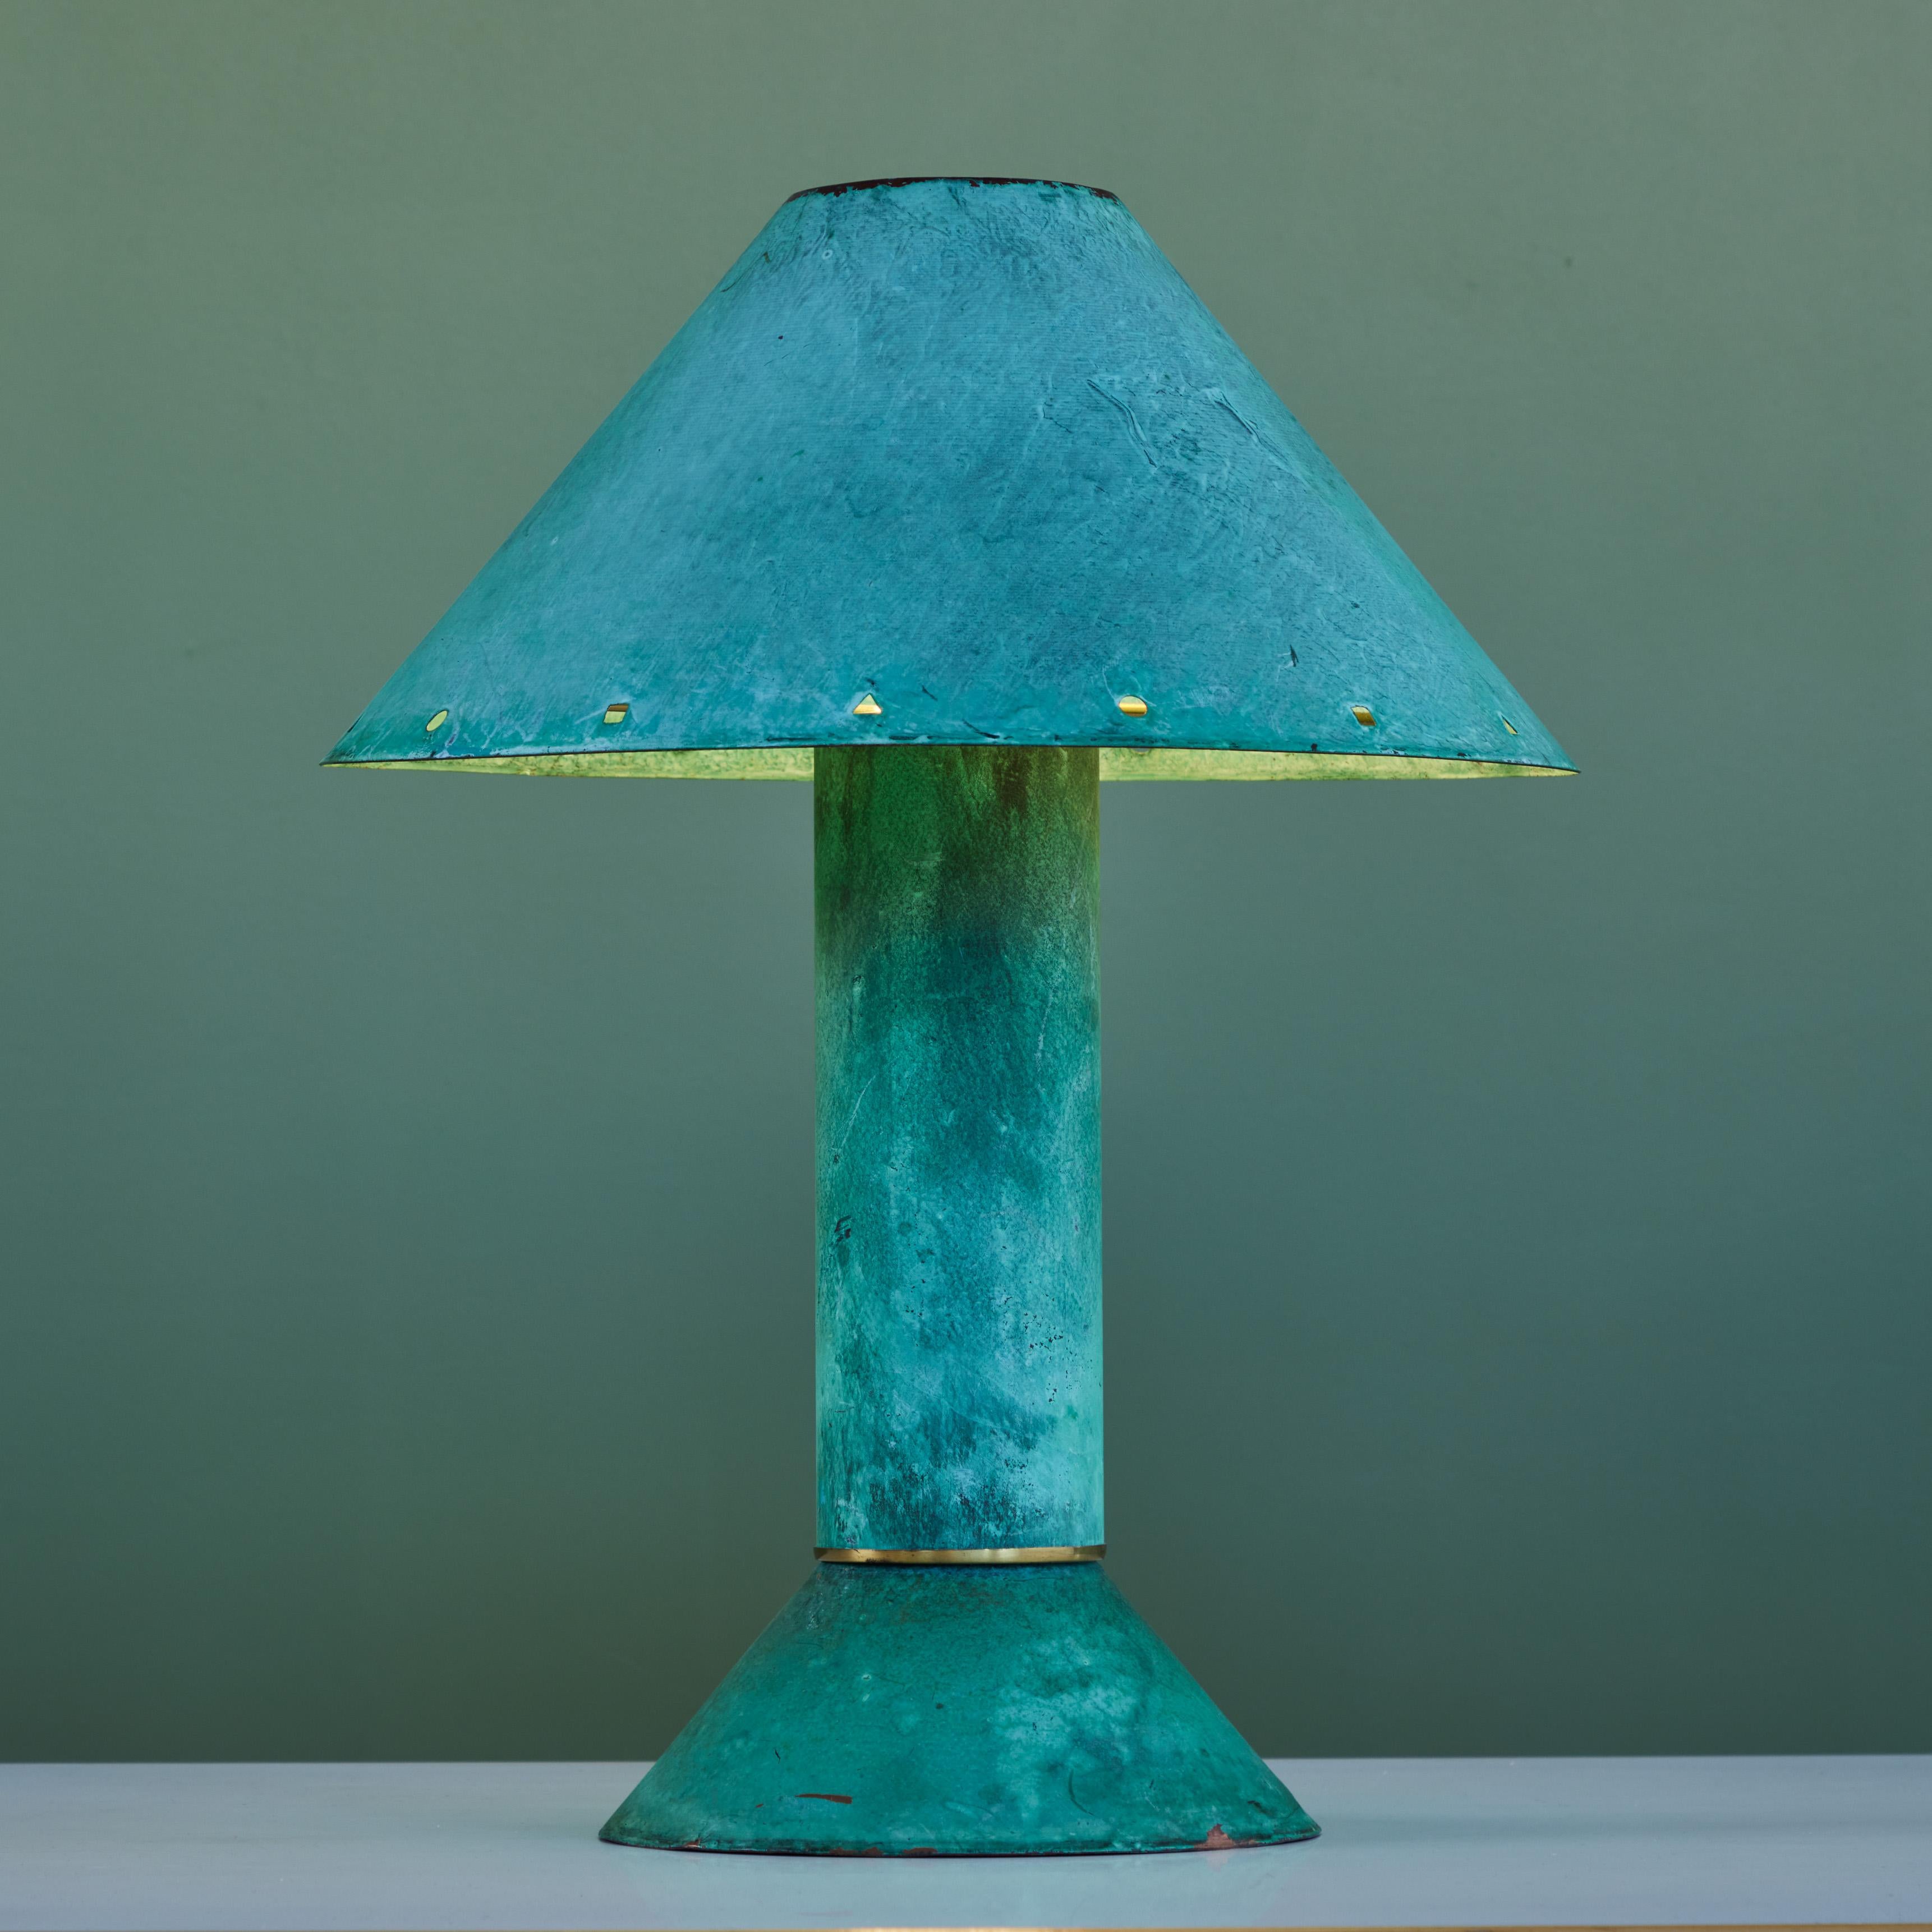 Postmoderne Tischleuchte des Beleuchtungsdesigners Ron Rezek aus Los Angeles, ca. 1980er Jahre. Die Lampe verfügt über einen grünspanfarbenen Metallrahmen und einen abnehmbaren Schirm mit poliertem Messingring, der am unteren Ende des kegelförmigen